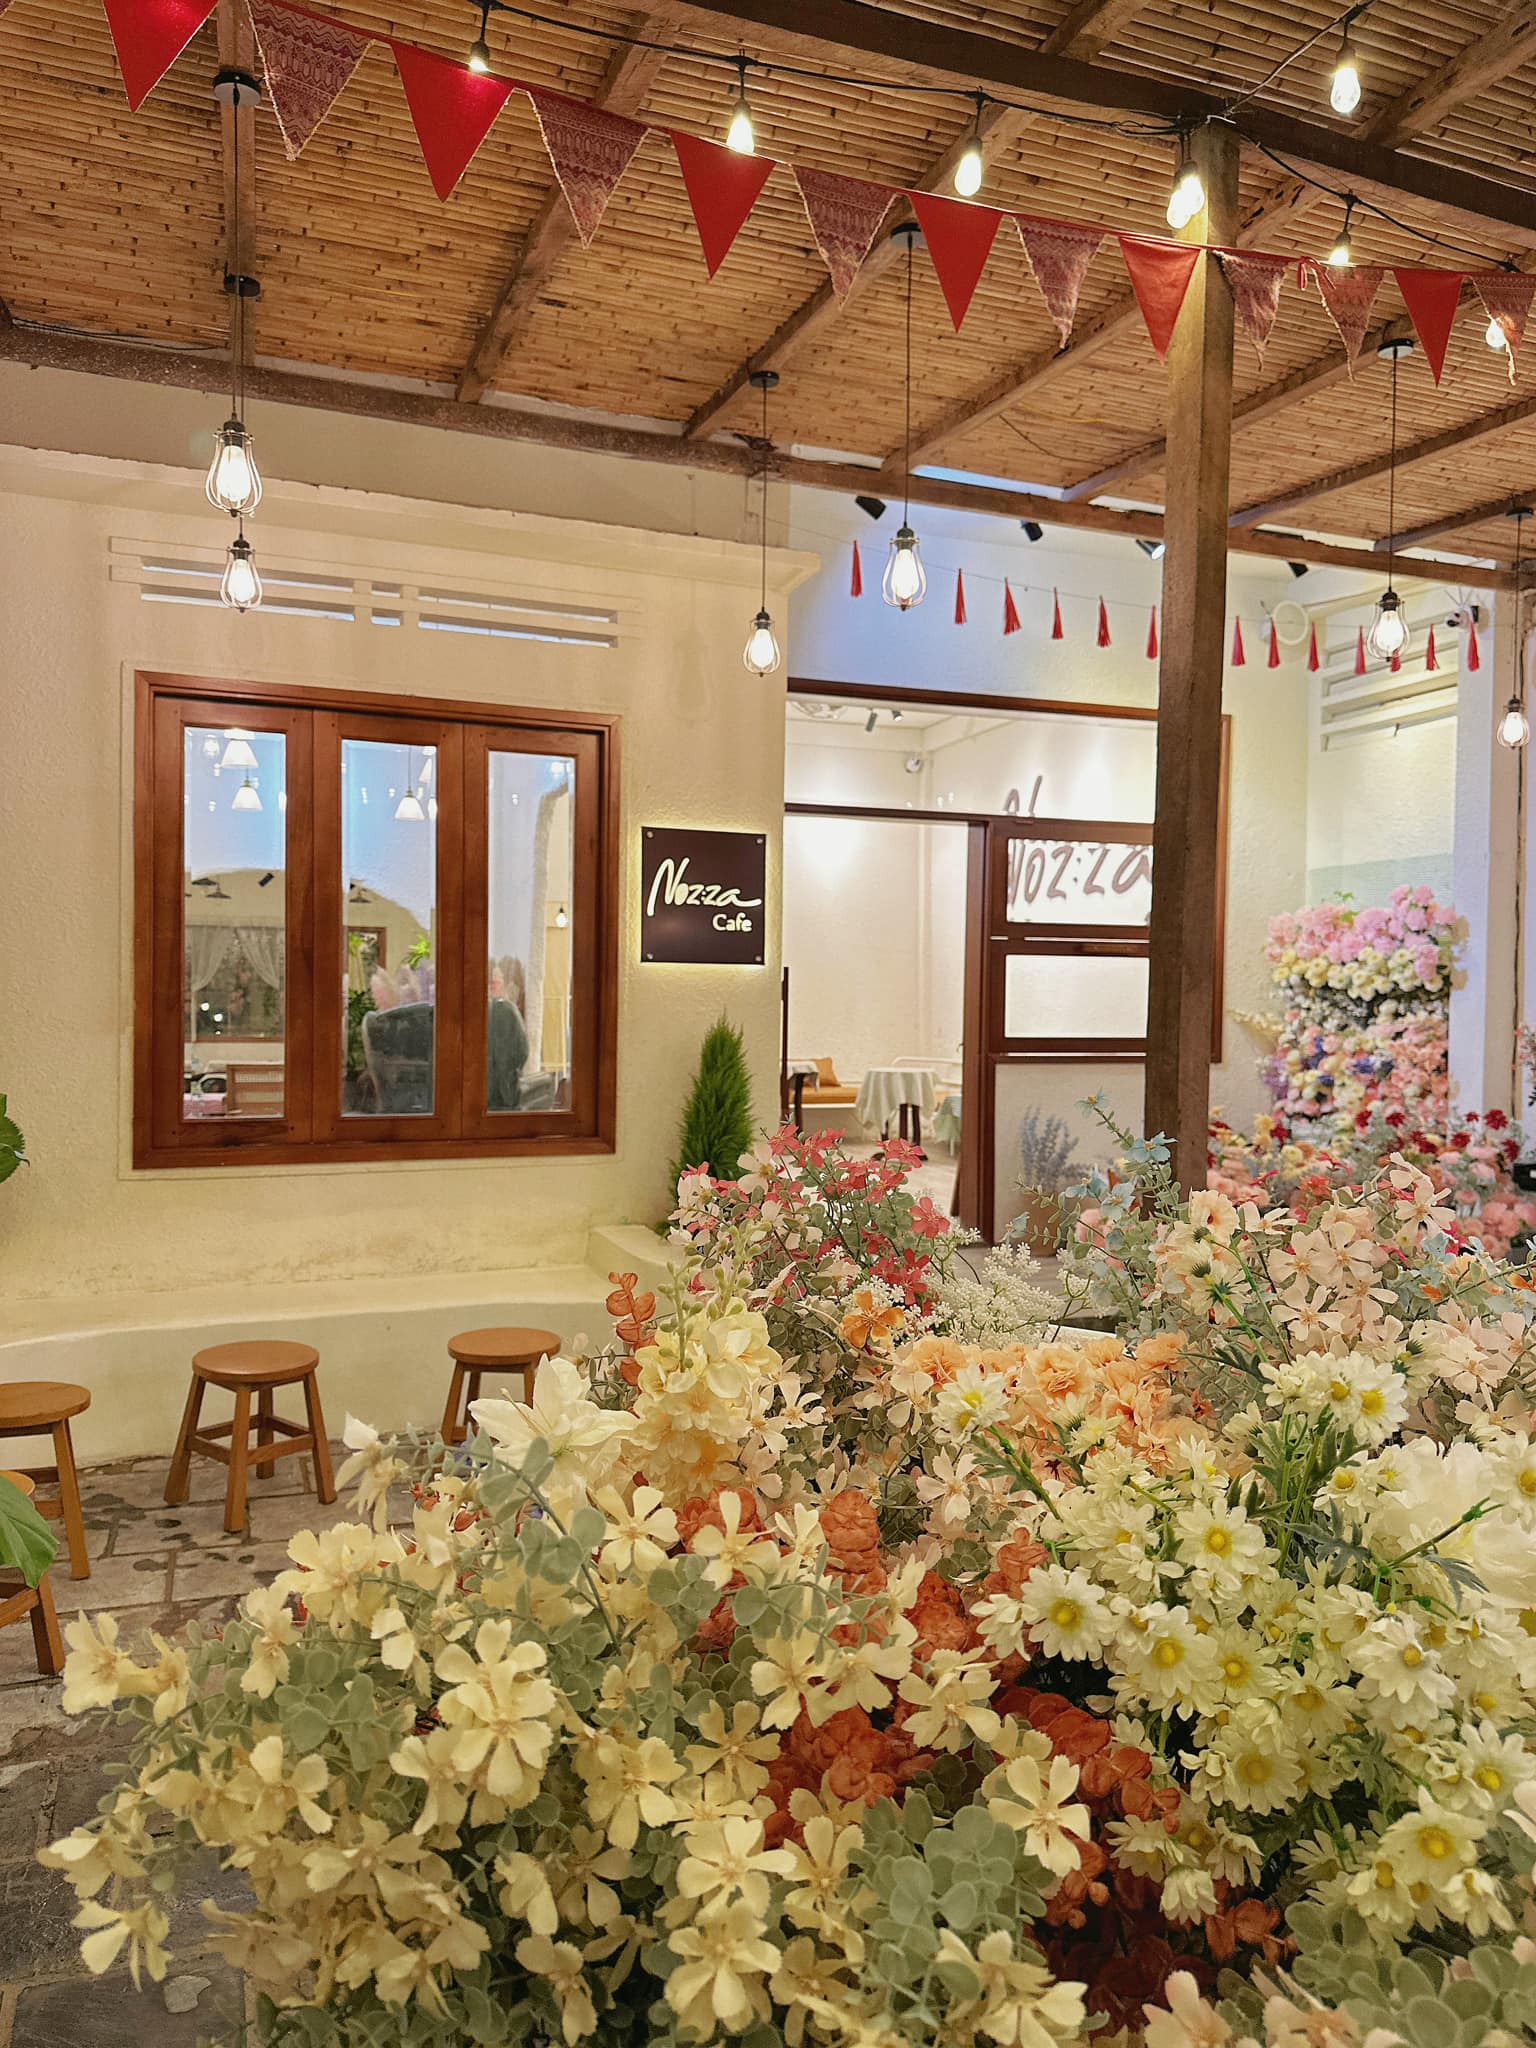 Không gian Noz:za cafe ngập tràn hoa.